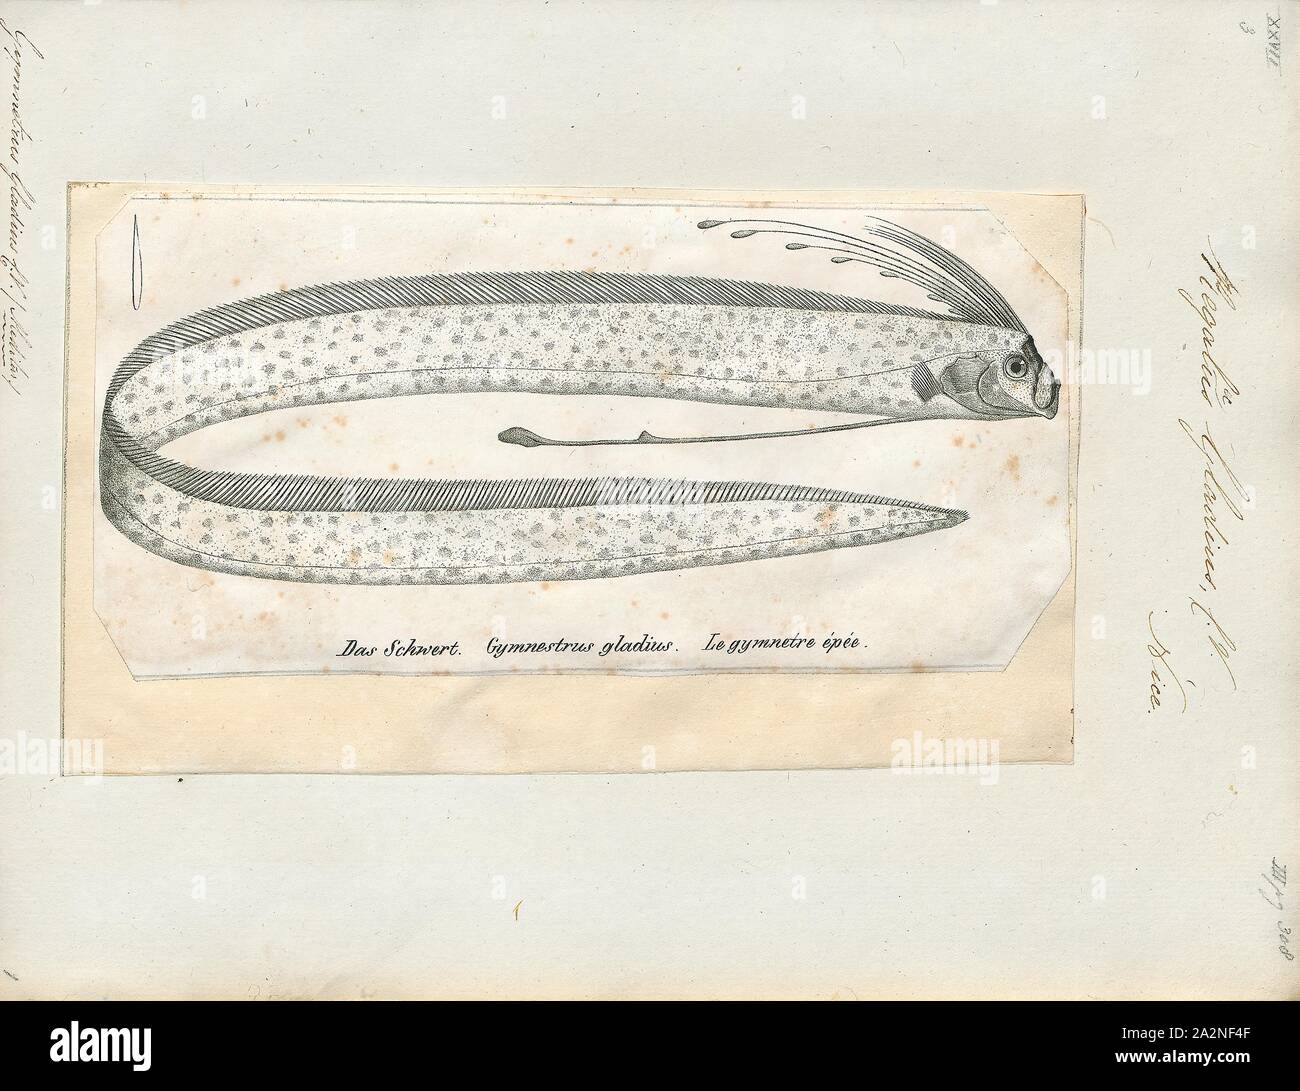 Regalecus gladius, Drucken, Regalecus ist ein Fisch der Gattung der Familie, die gemeinhin als Regalecidae oarfish, 1700-1880 Stockfoto